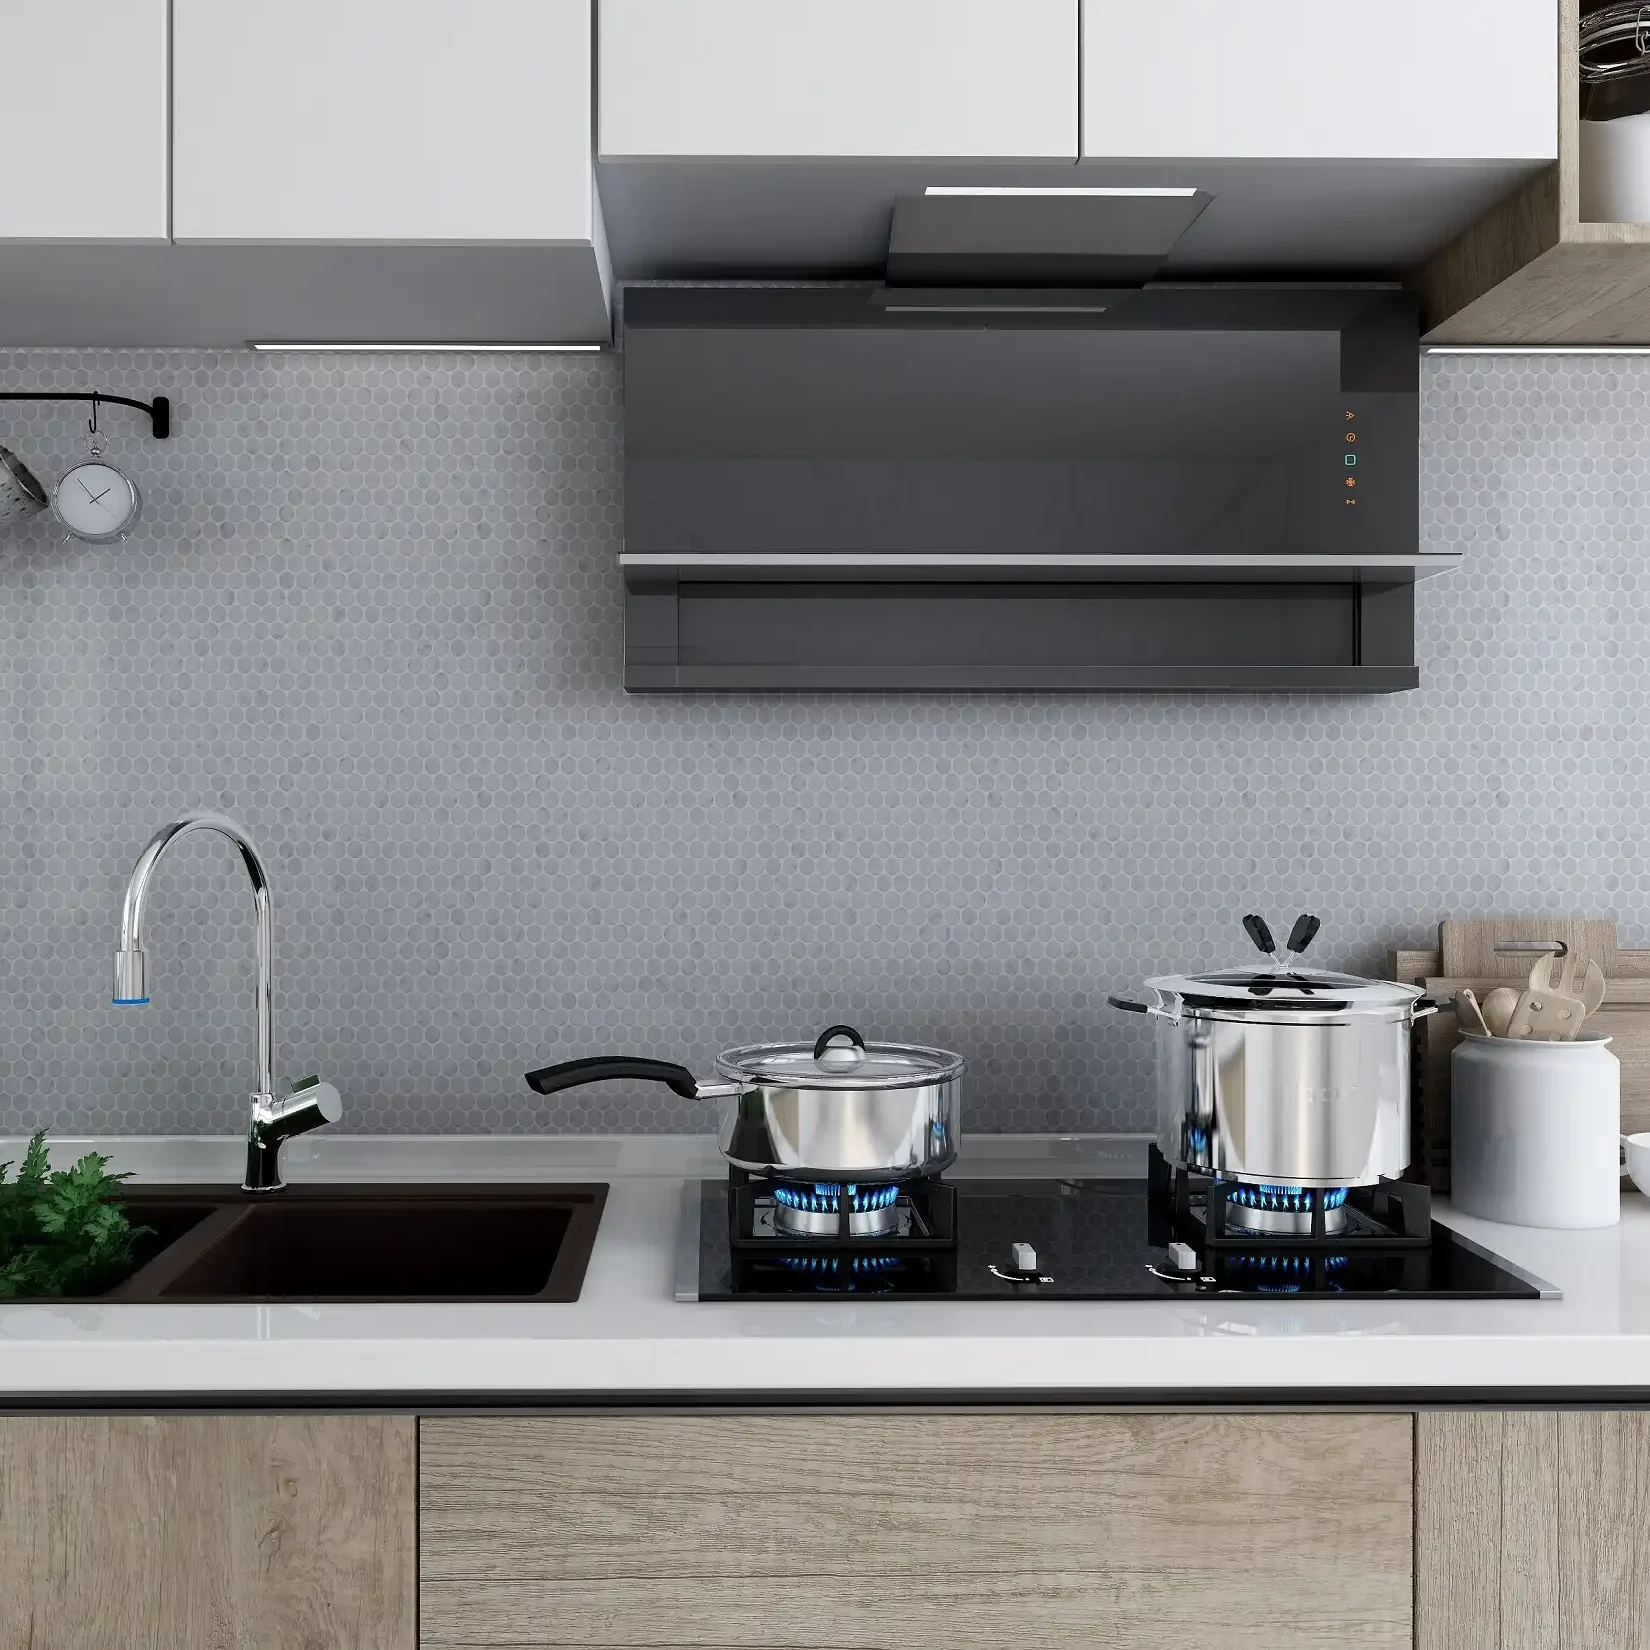 Image of Kitchen Backsplash featuring 3/4 Honed Marble Pennyround Mosaic Tile